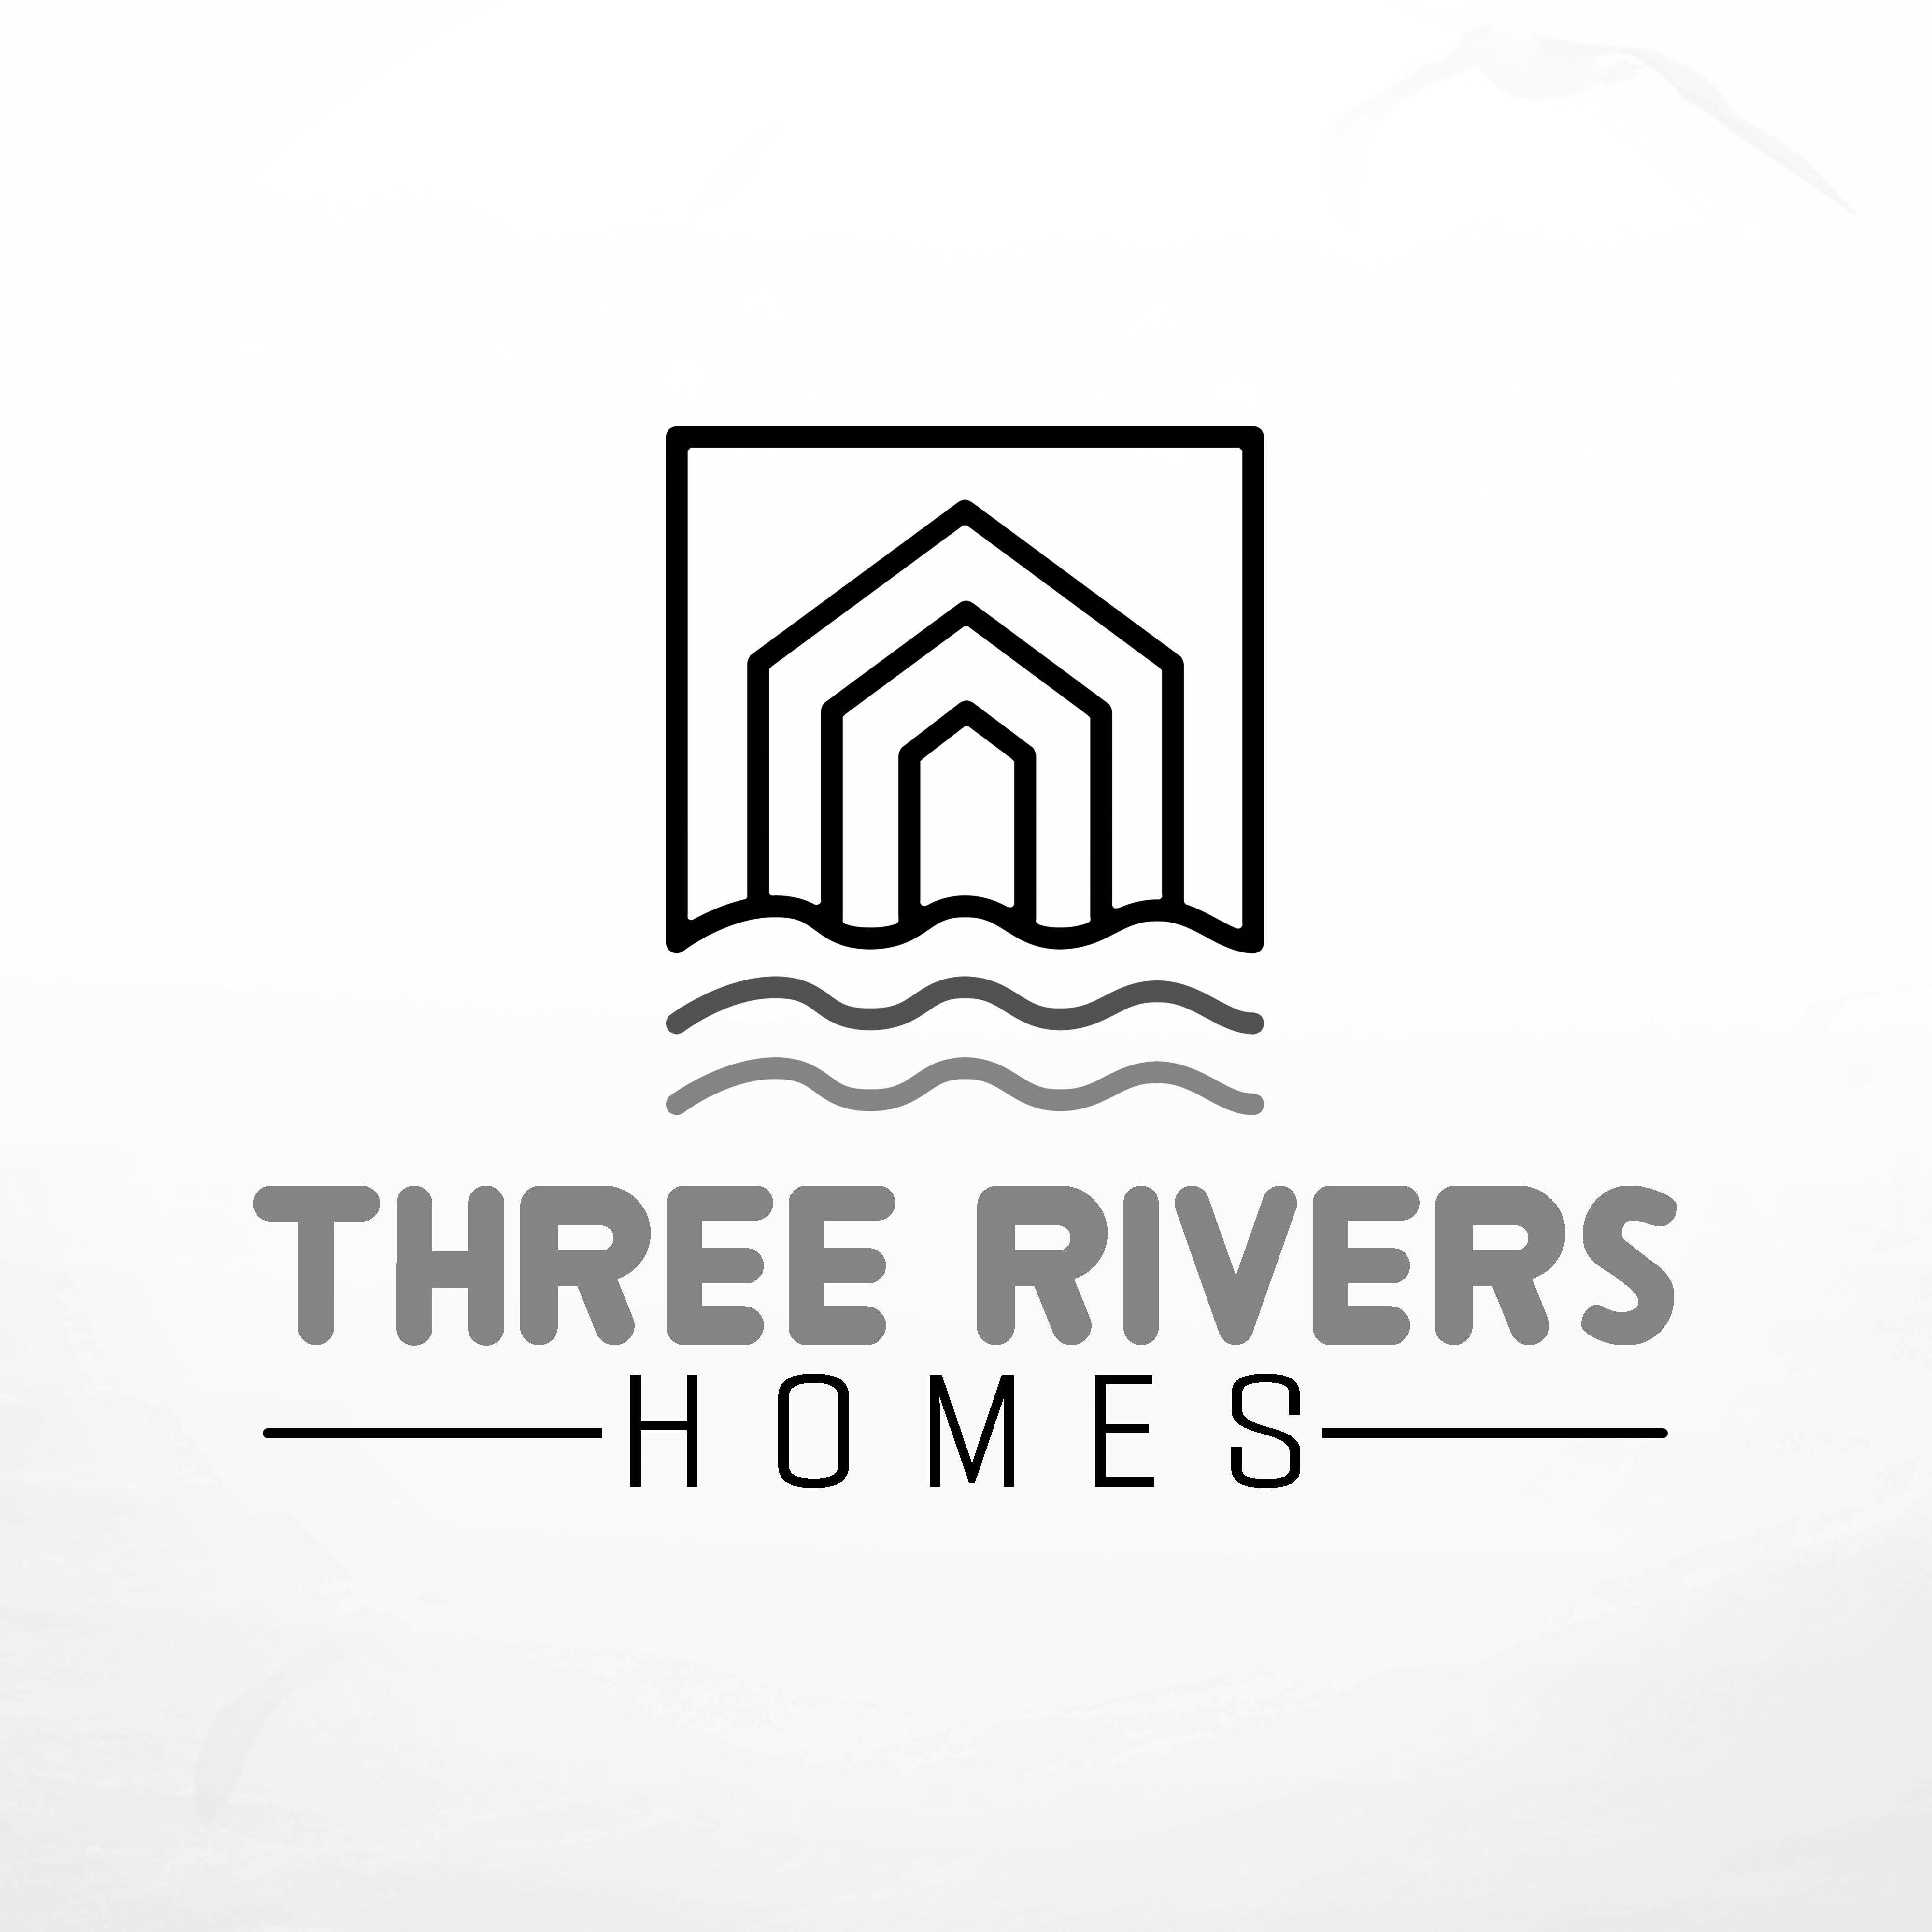 Three Rivers Homes (1)